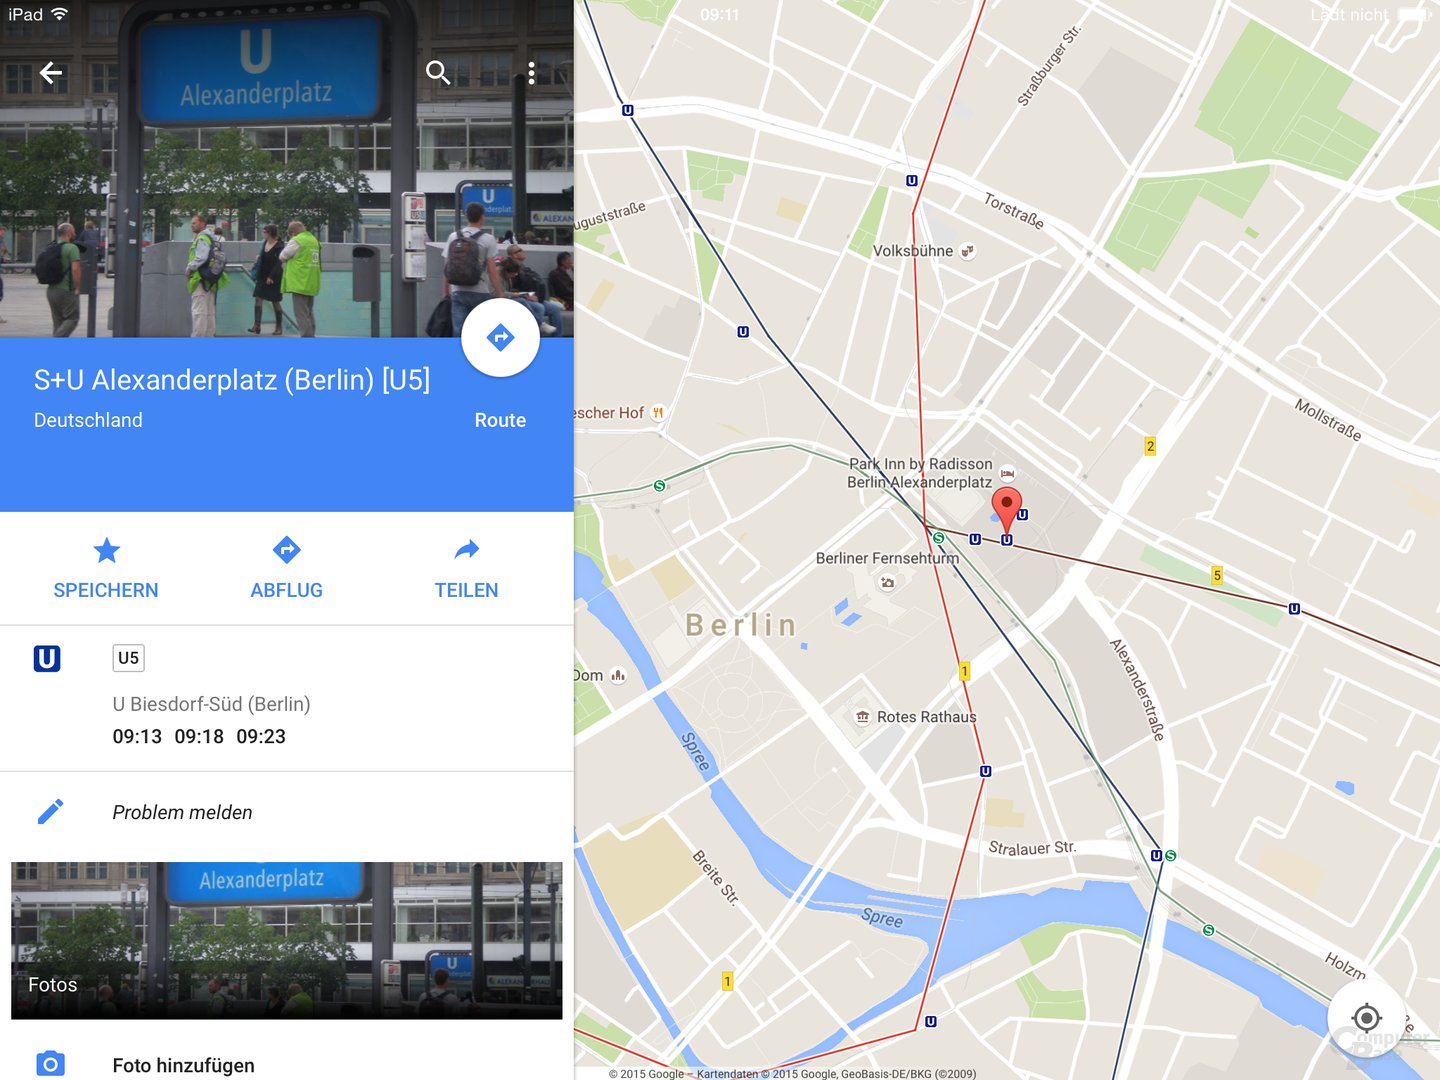 Google Maps 4.8.0 für iOS